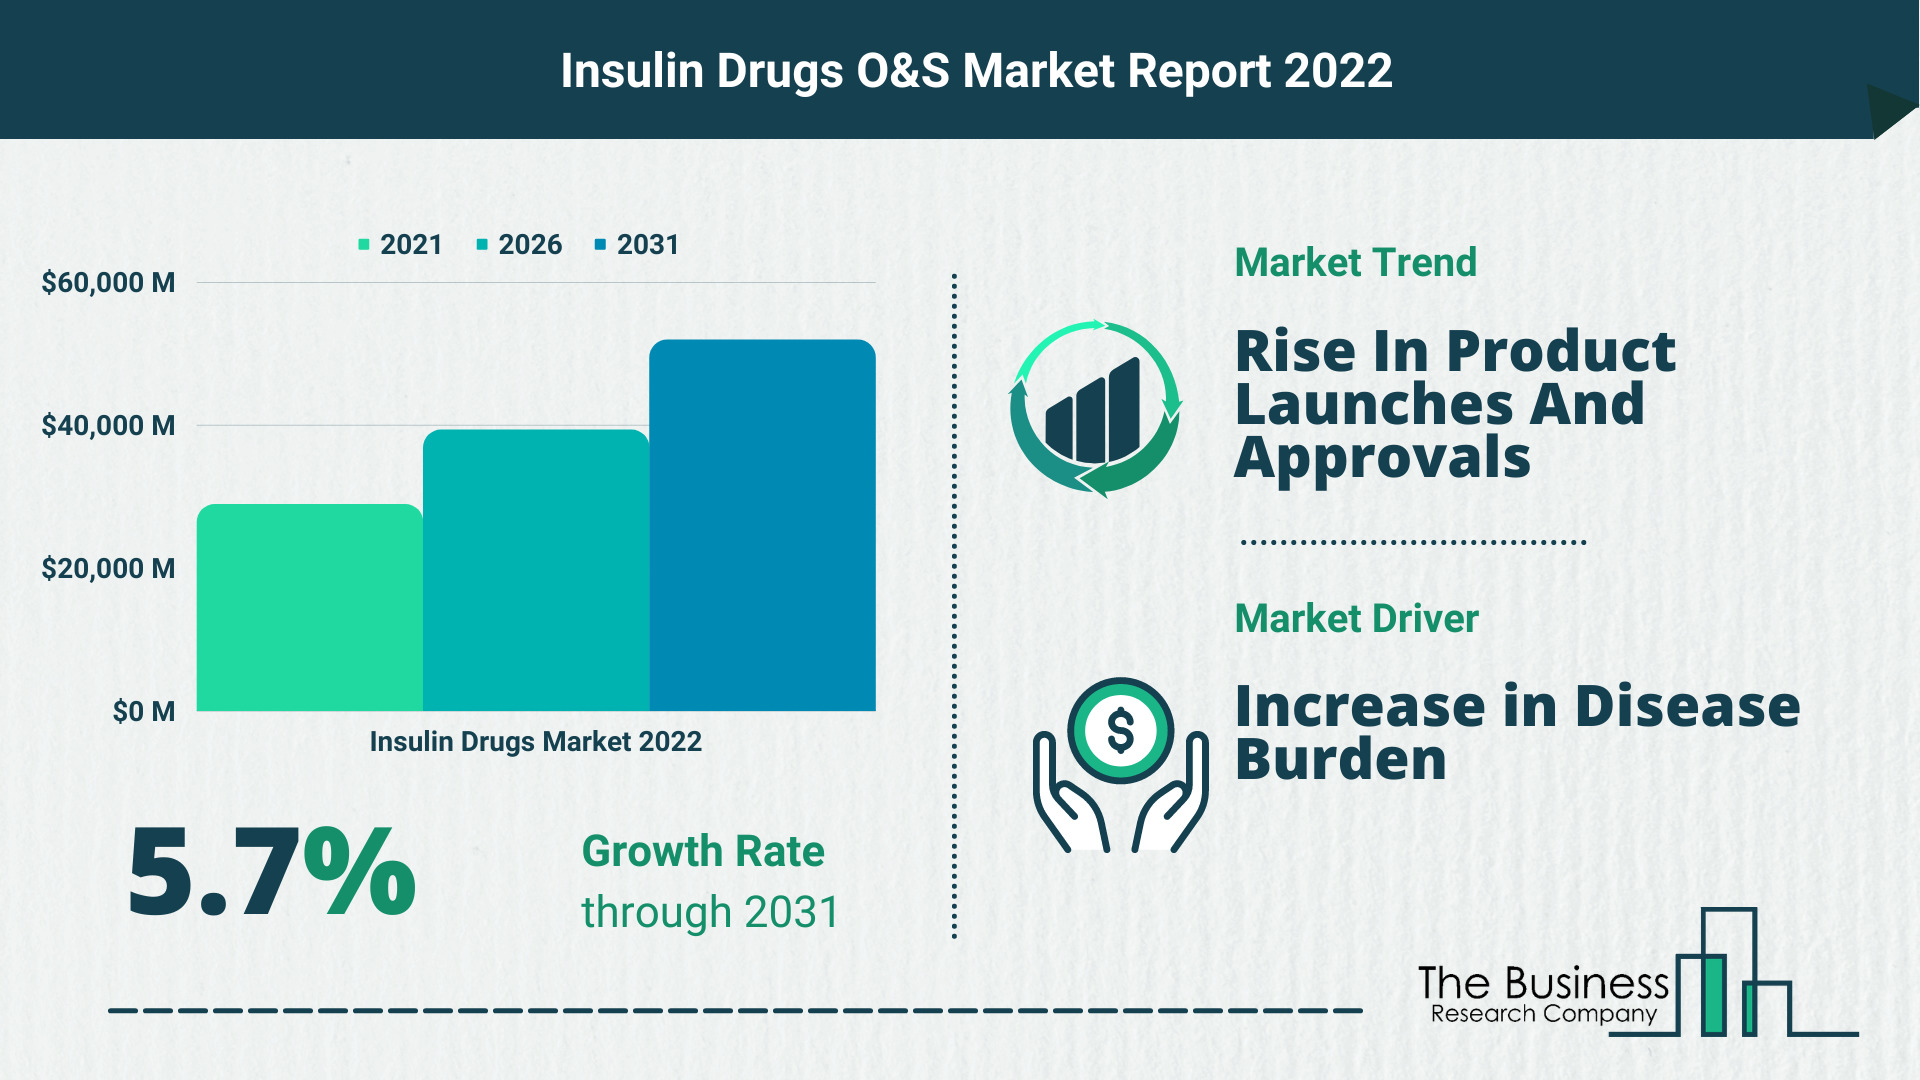 Global Insulin Drugs Market Size